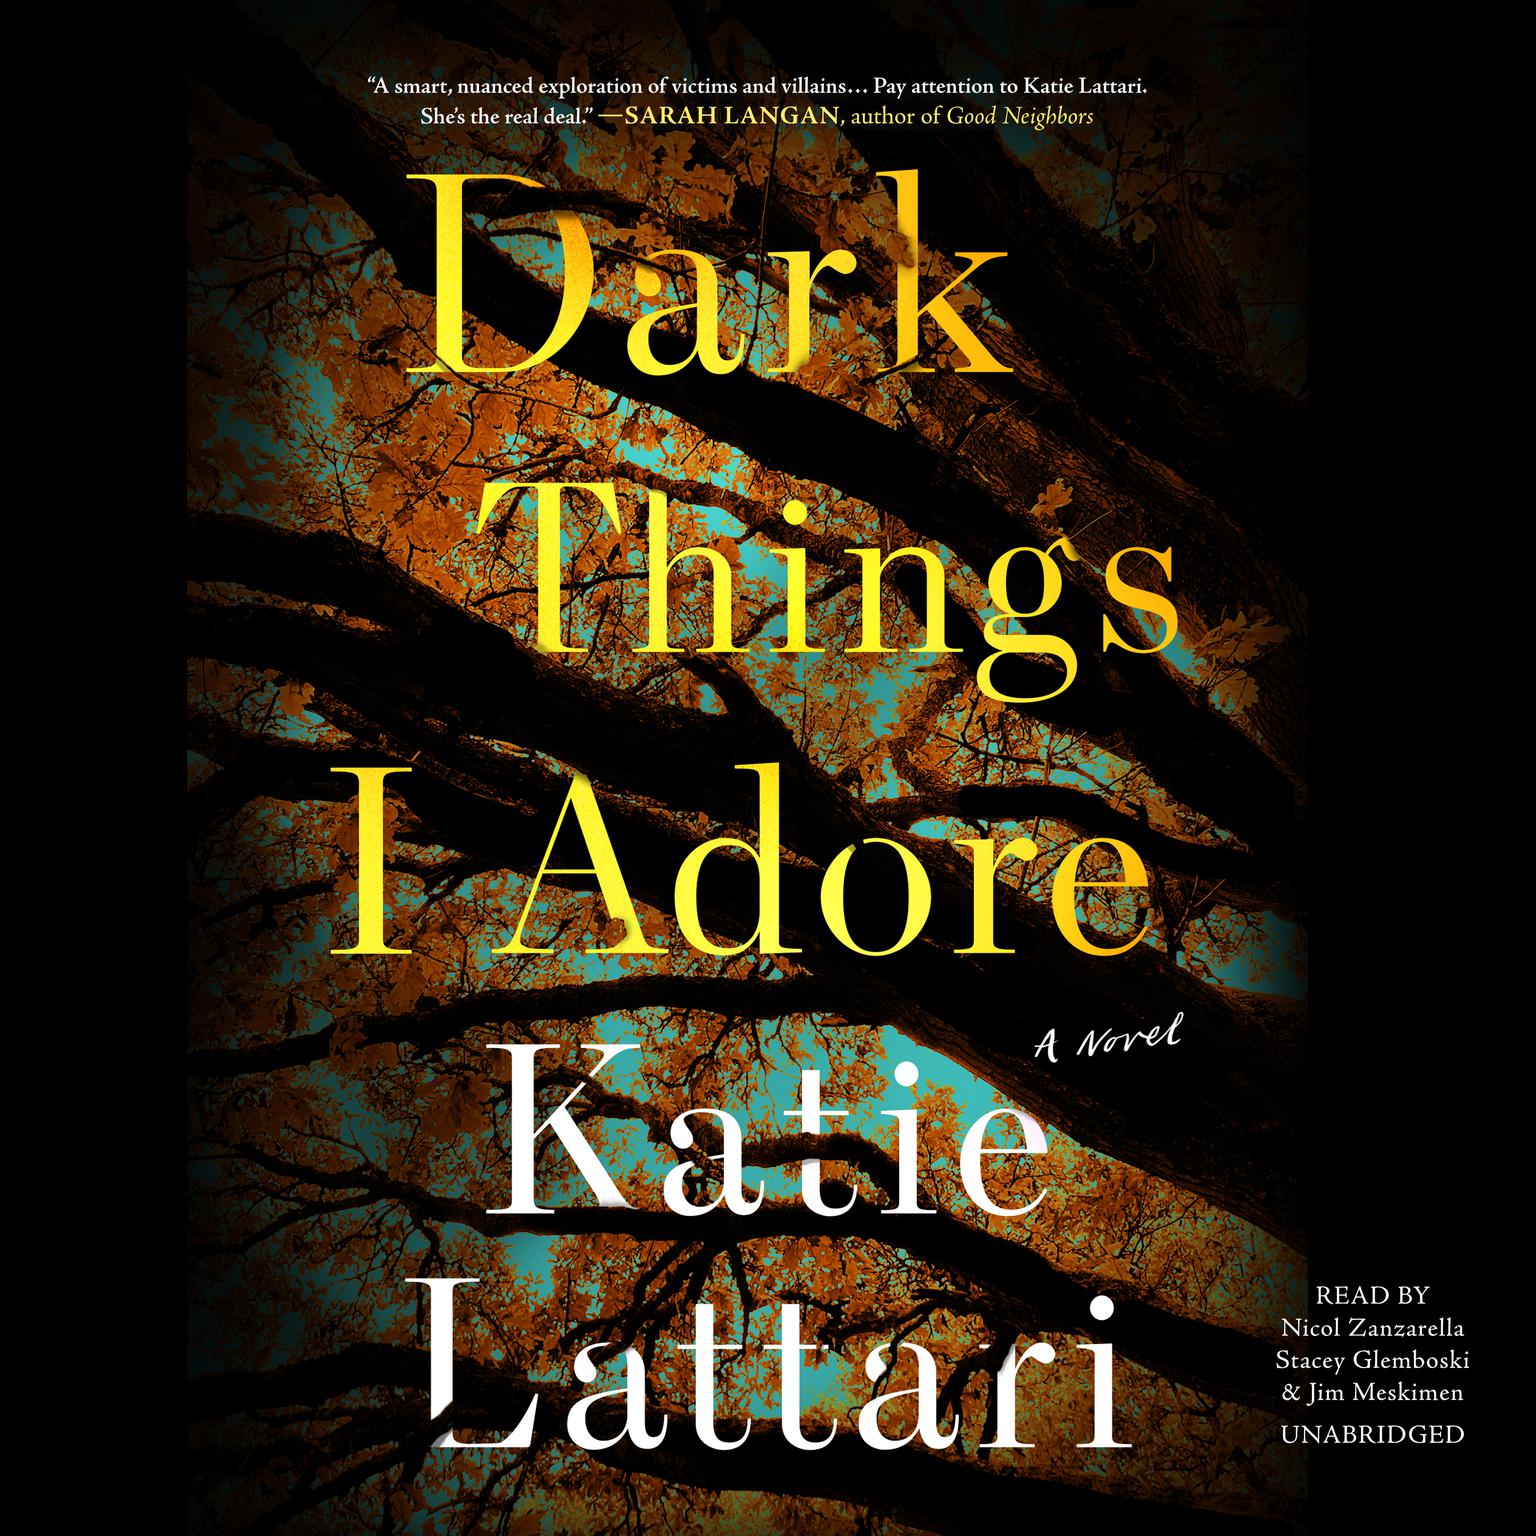 Dark Things I Adore Audiobook, by Katie Lattari